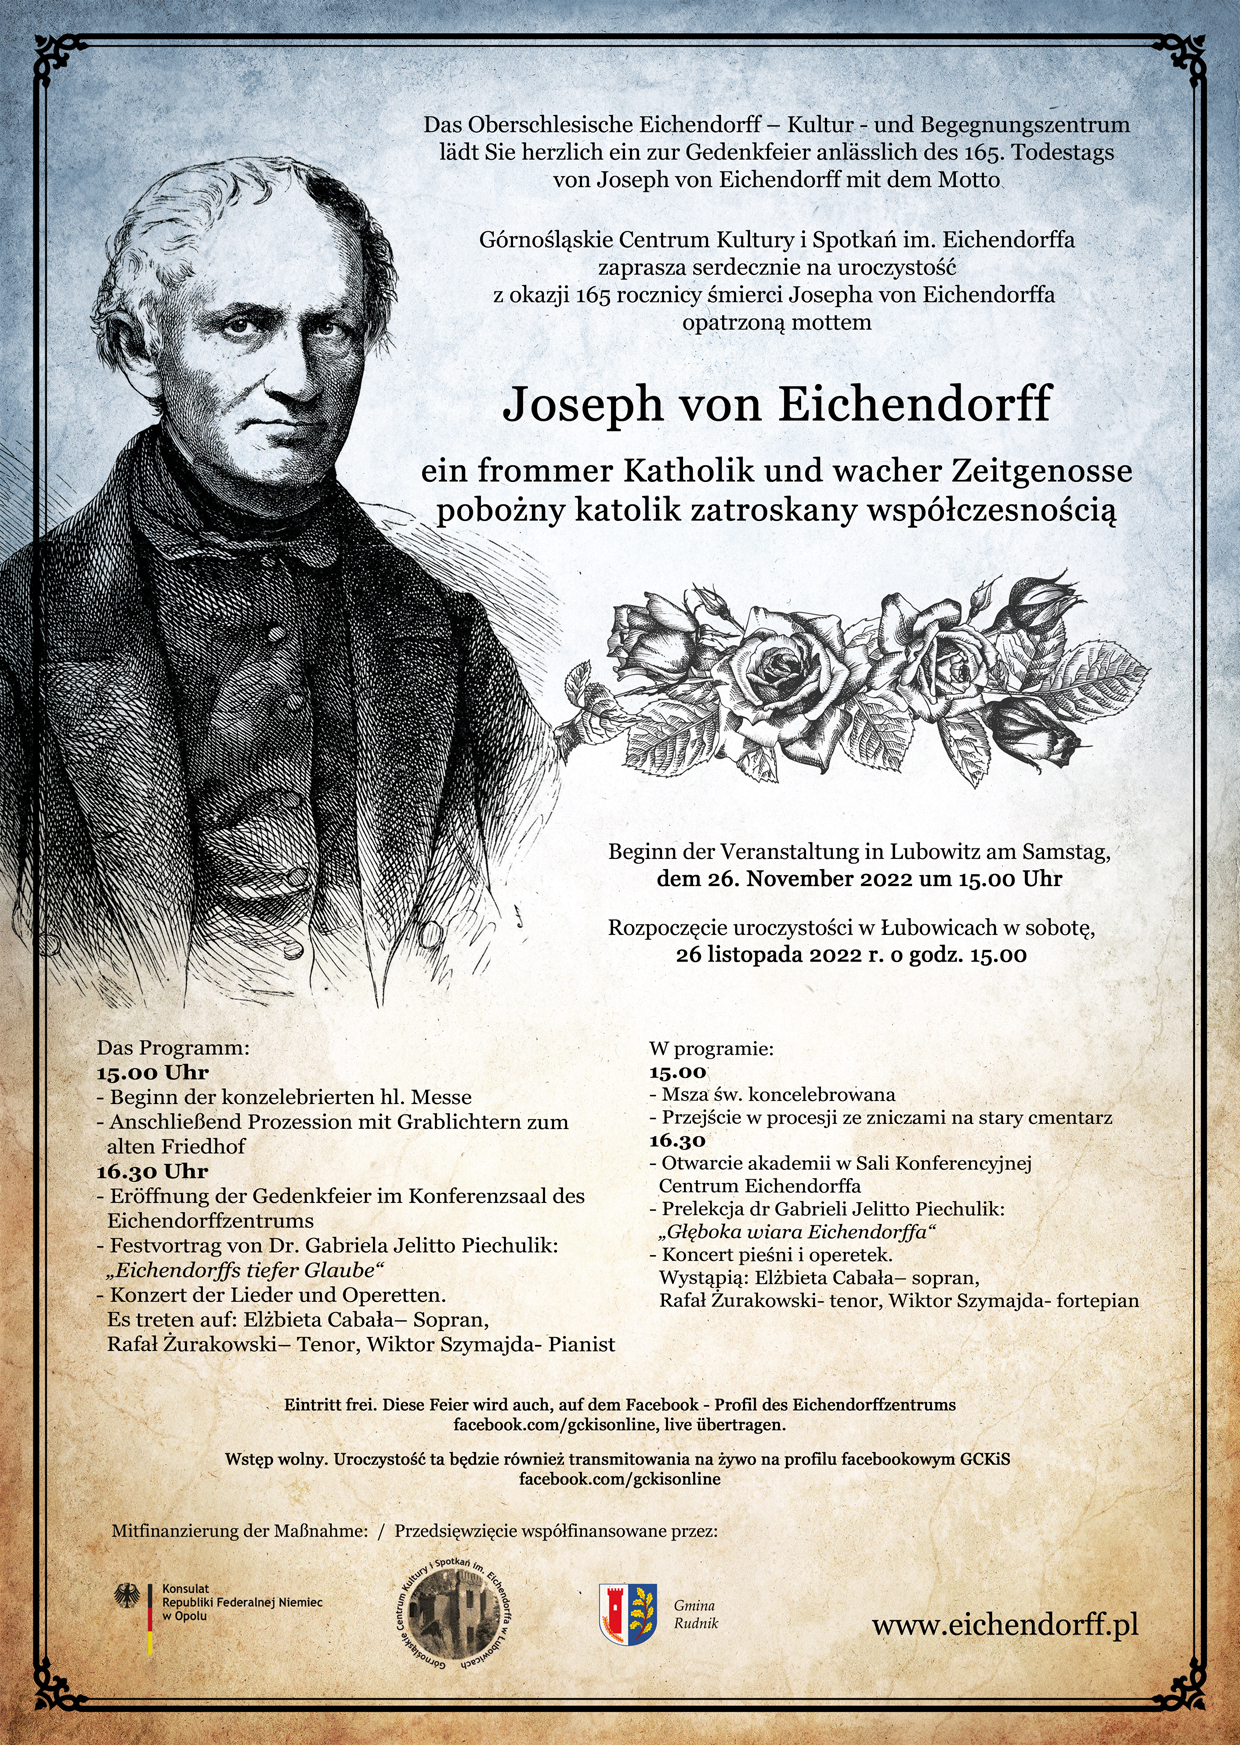 165. Todestags von Joseph von Eichendorff